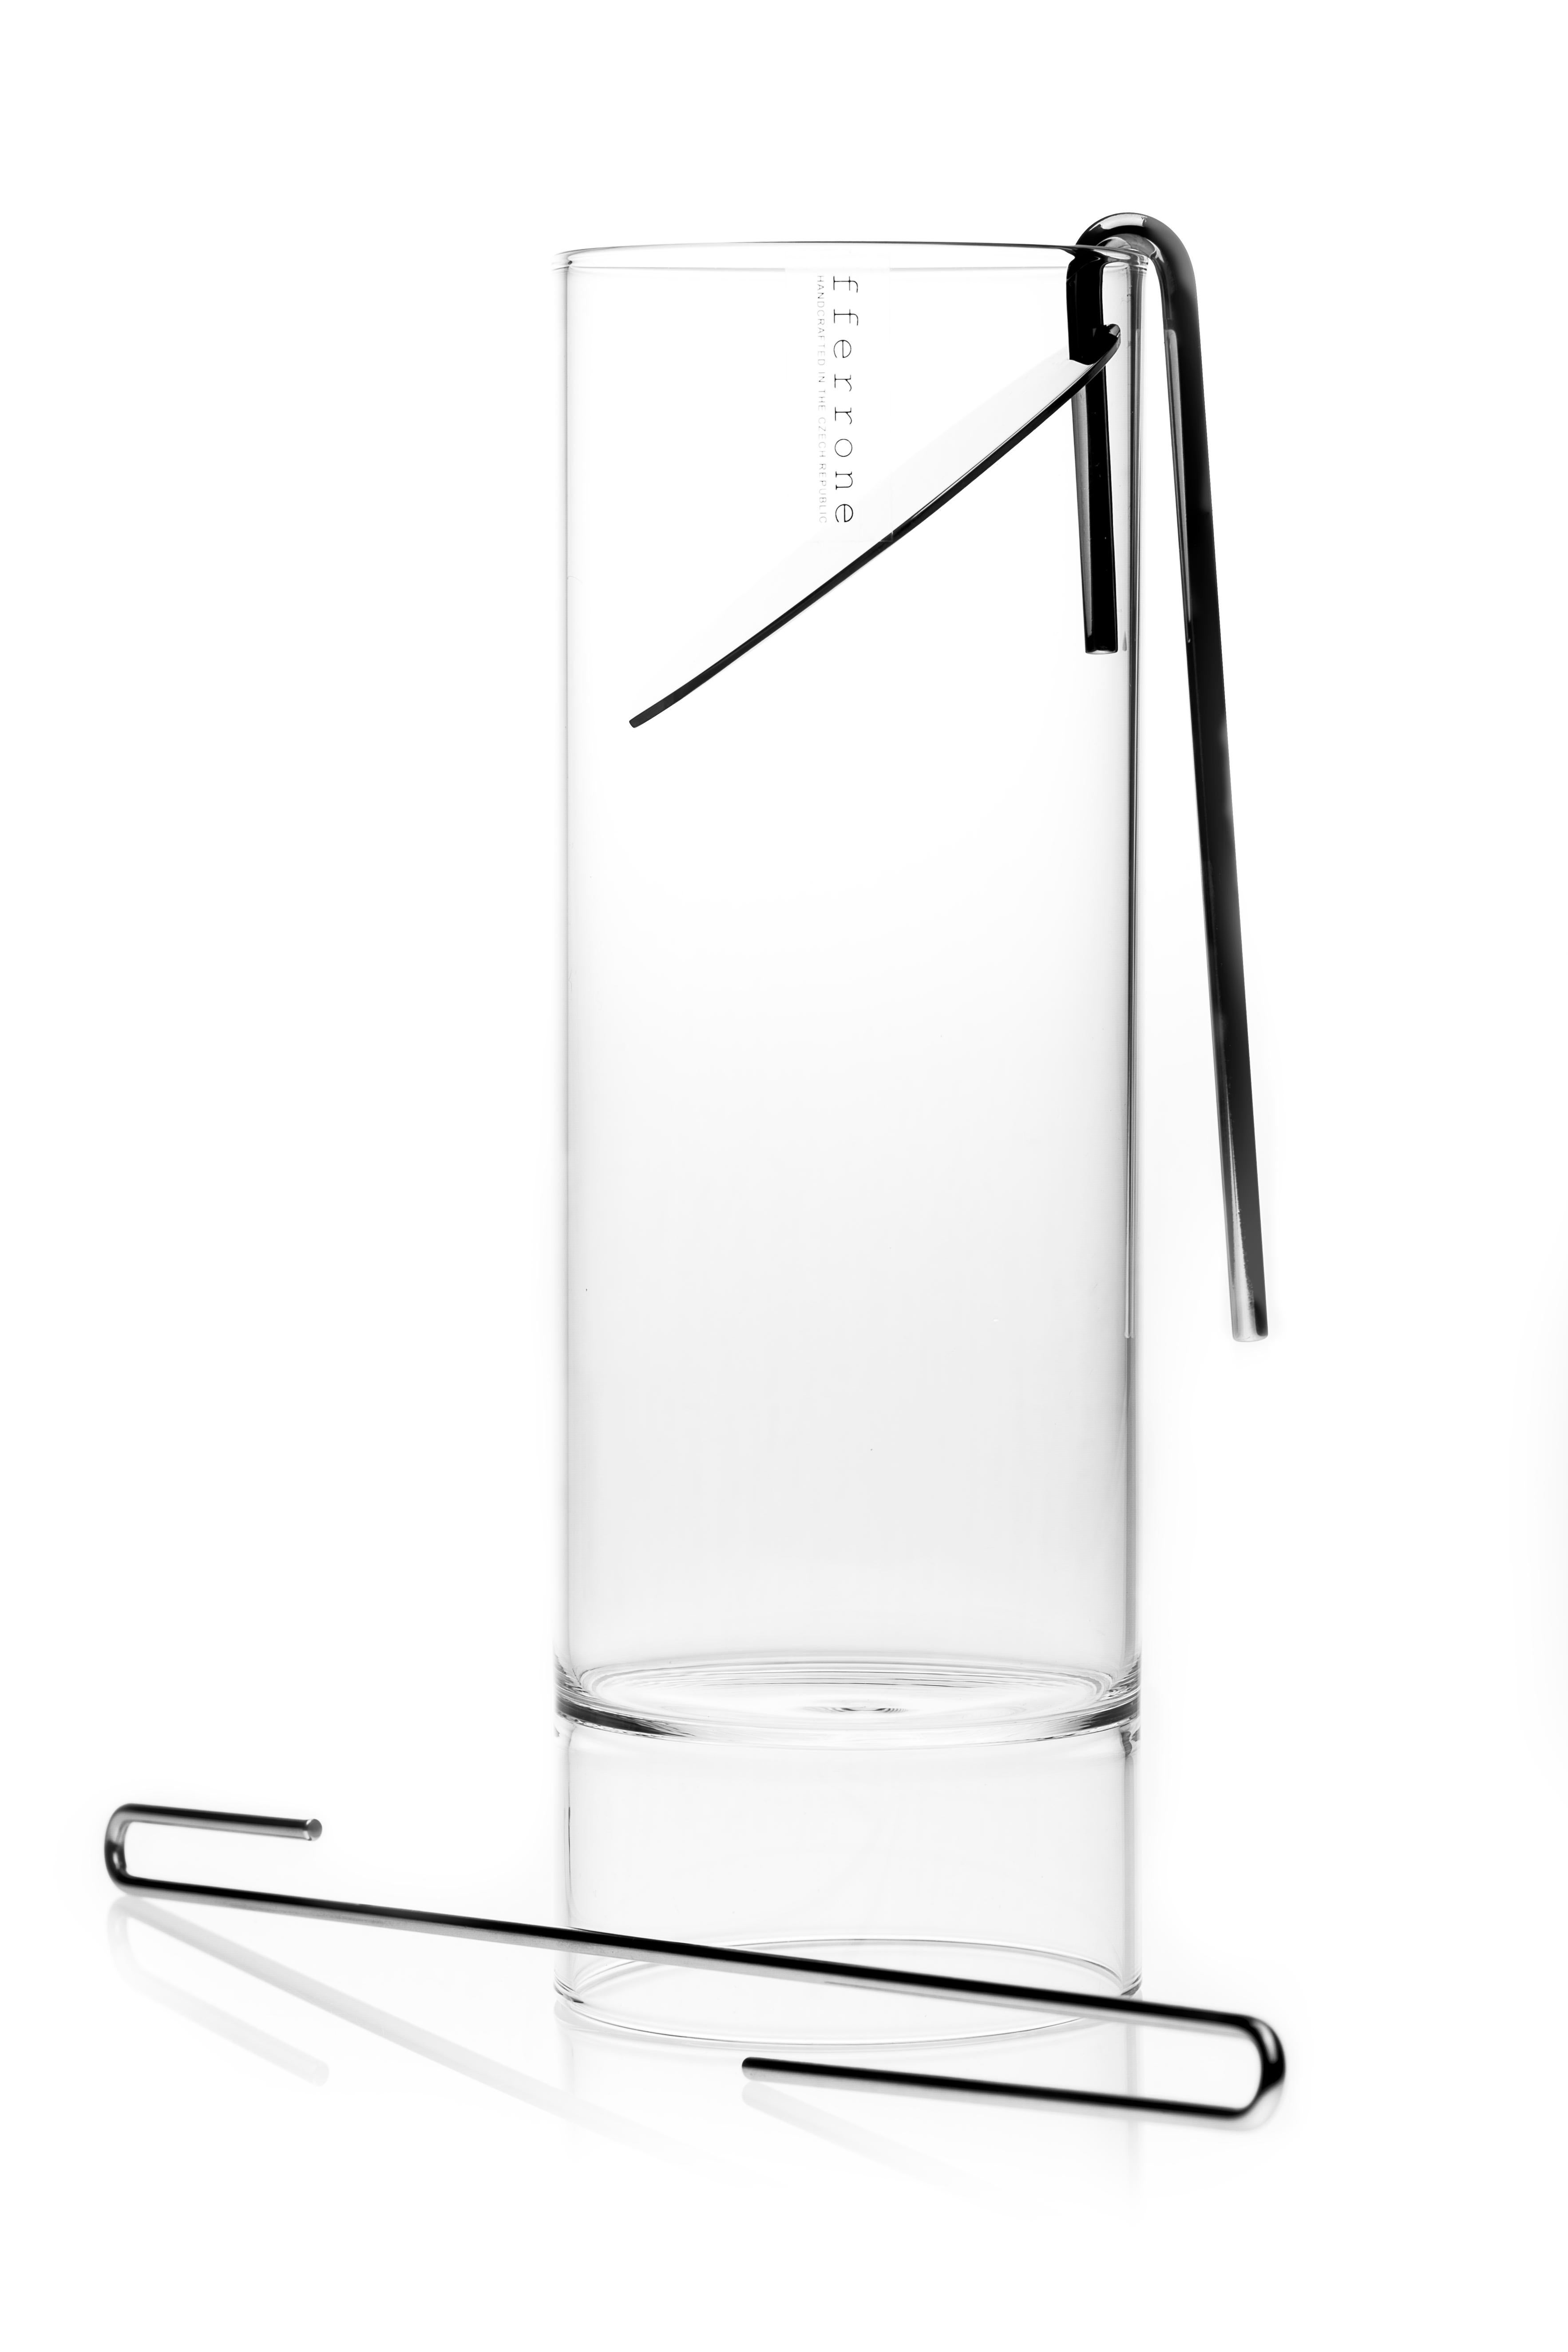 Das moderne Set aus tschechischem Glas der Minimal Revolution Collection enthält eine Karaffe für Cocktailmixer, ein Sieb, einen Rührstab und acht Rocks Martini-Gläser mit zwei Enden.

Die minimalistische Collection'S Revolution besticht durch